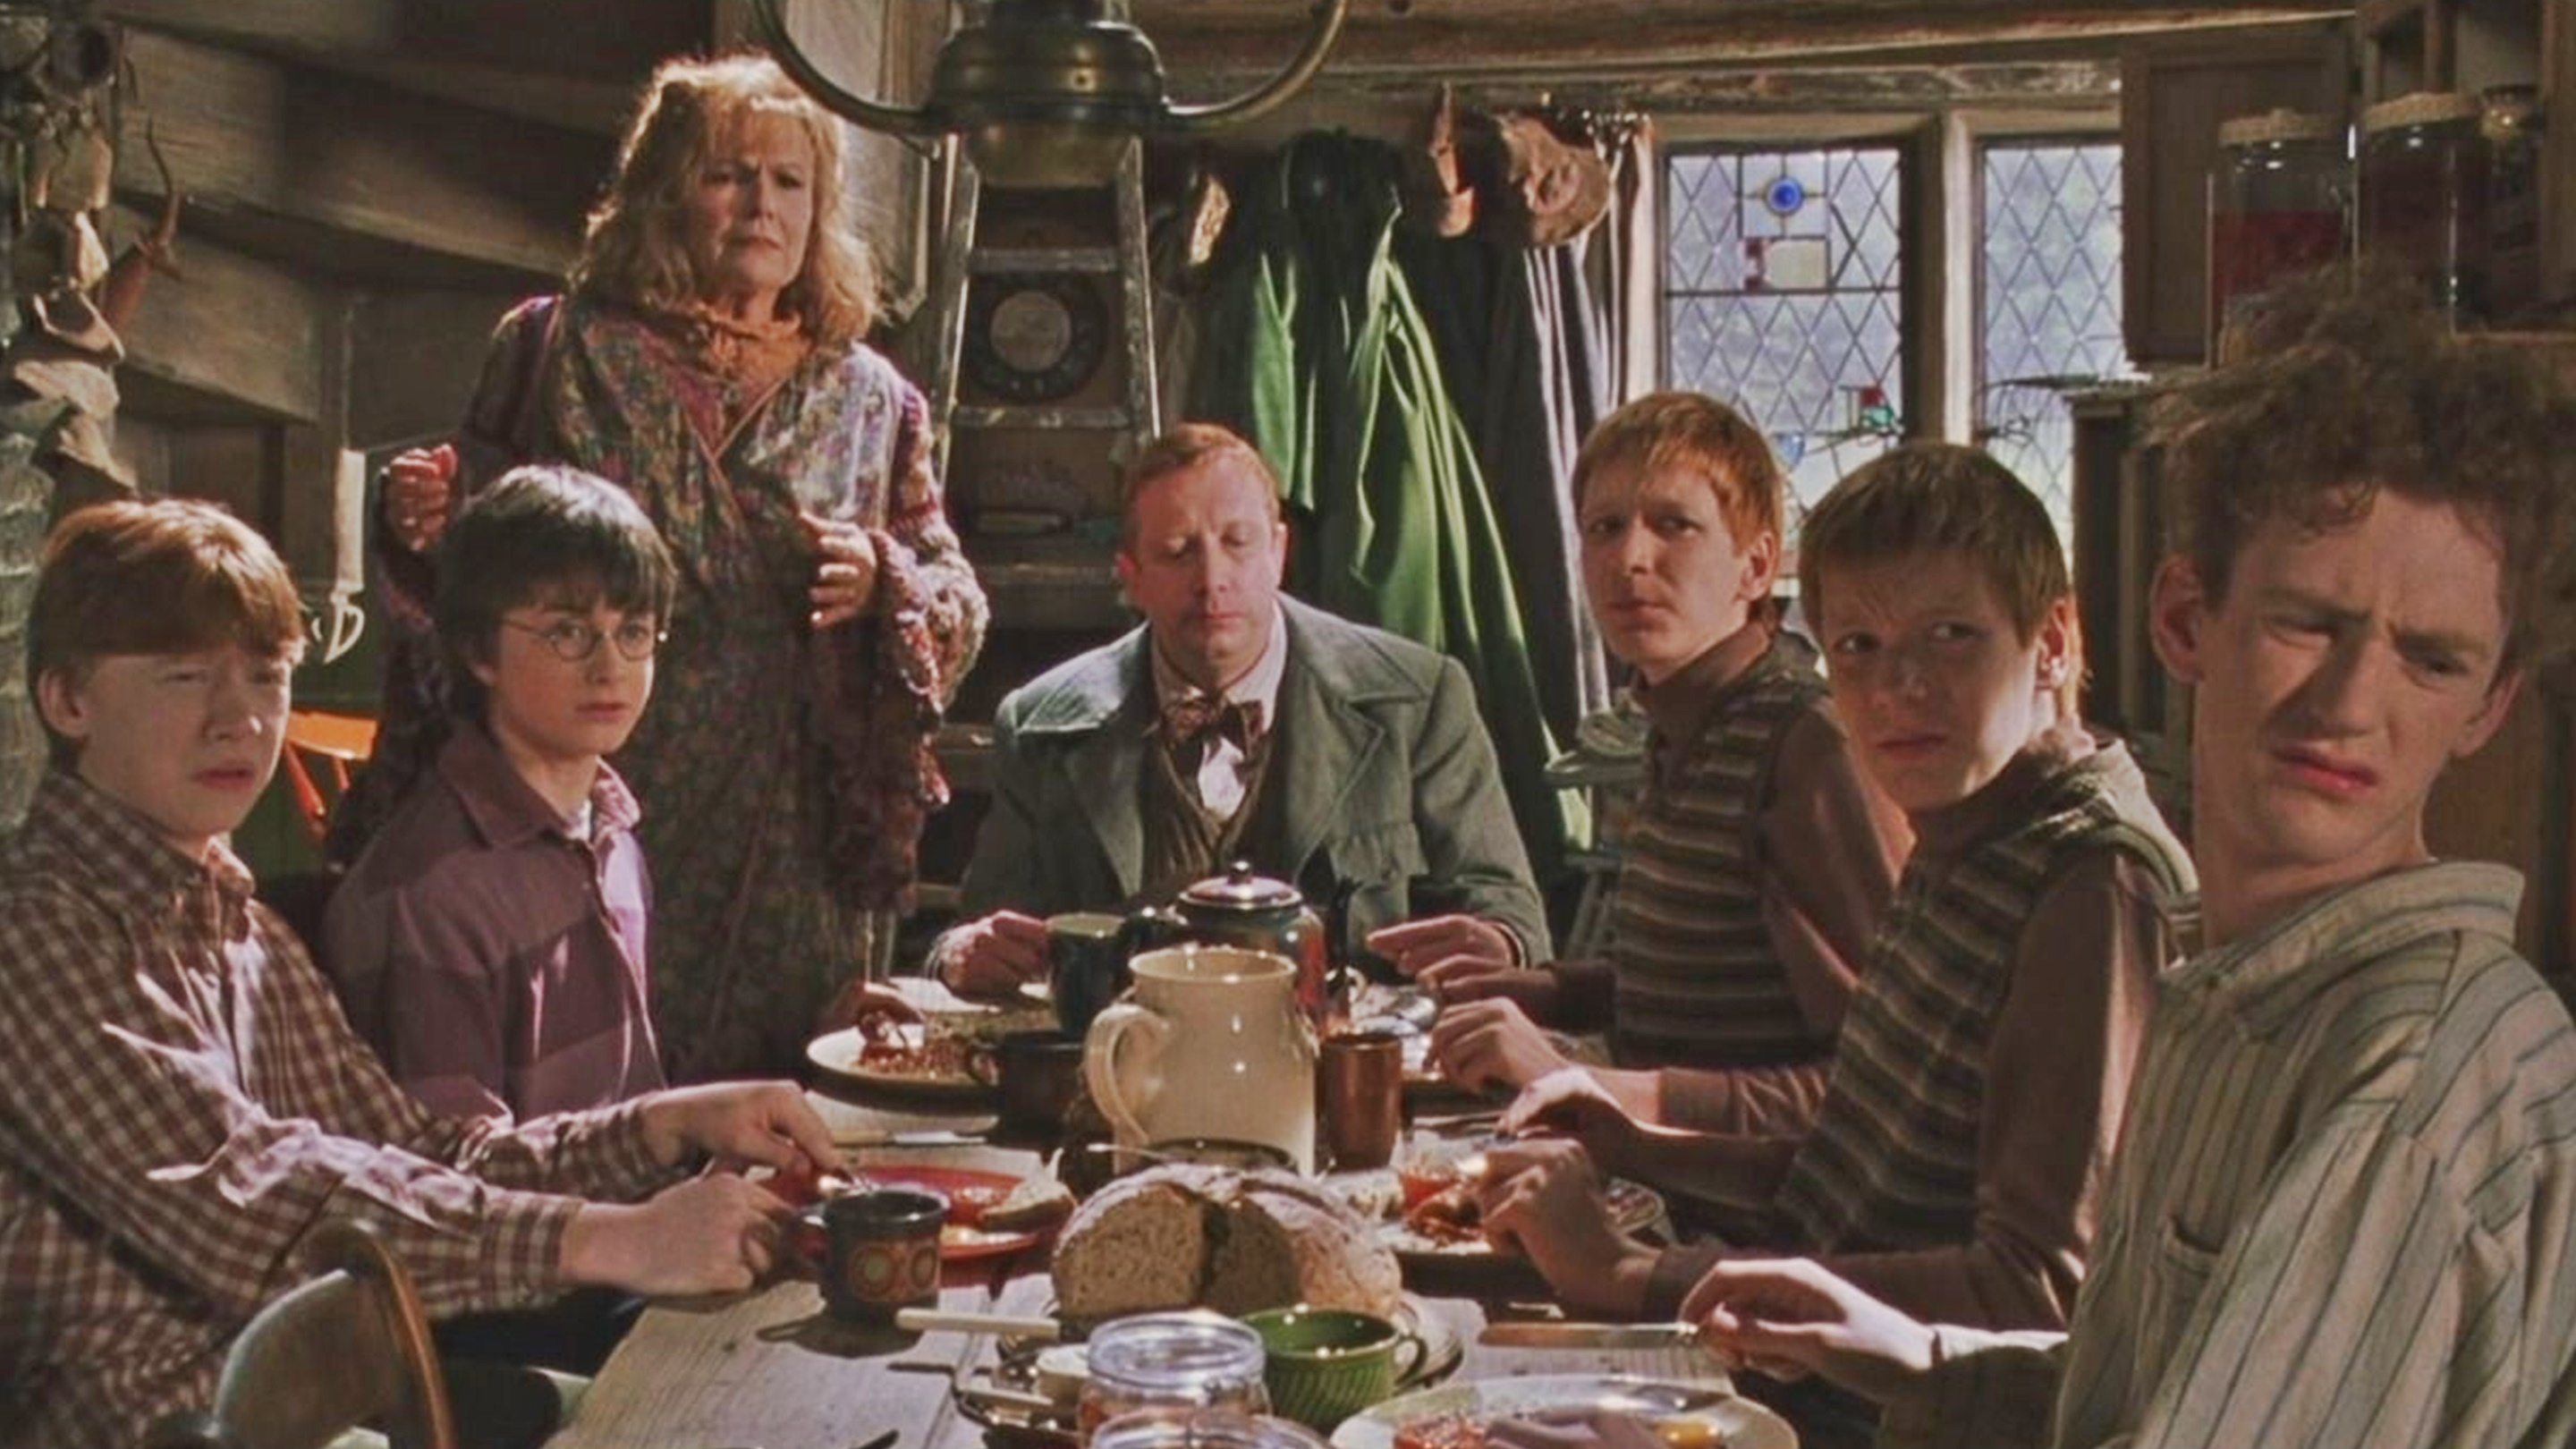 La serie de Harry Potter en HBO Max prueba la desesperación por  rentabilizar el universo de J.K. Rowling